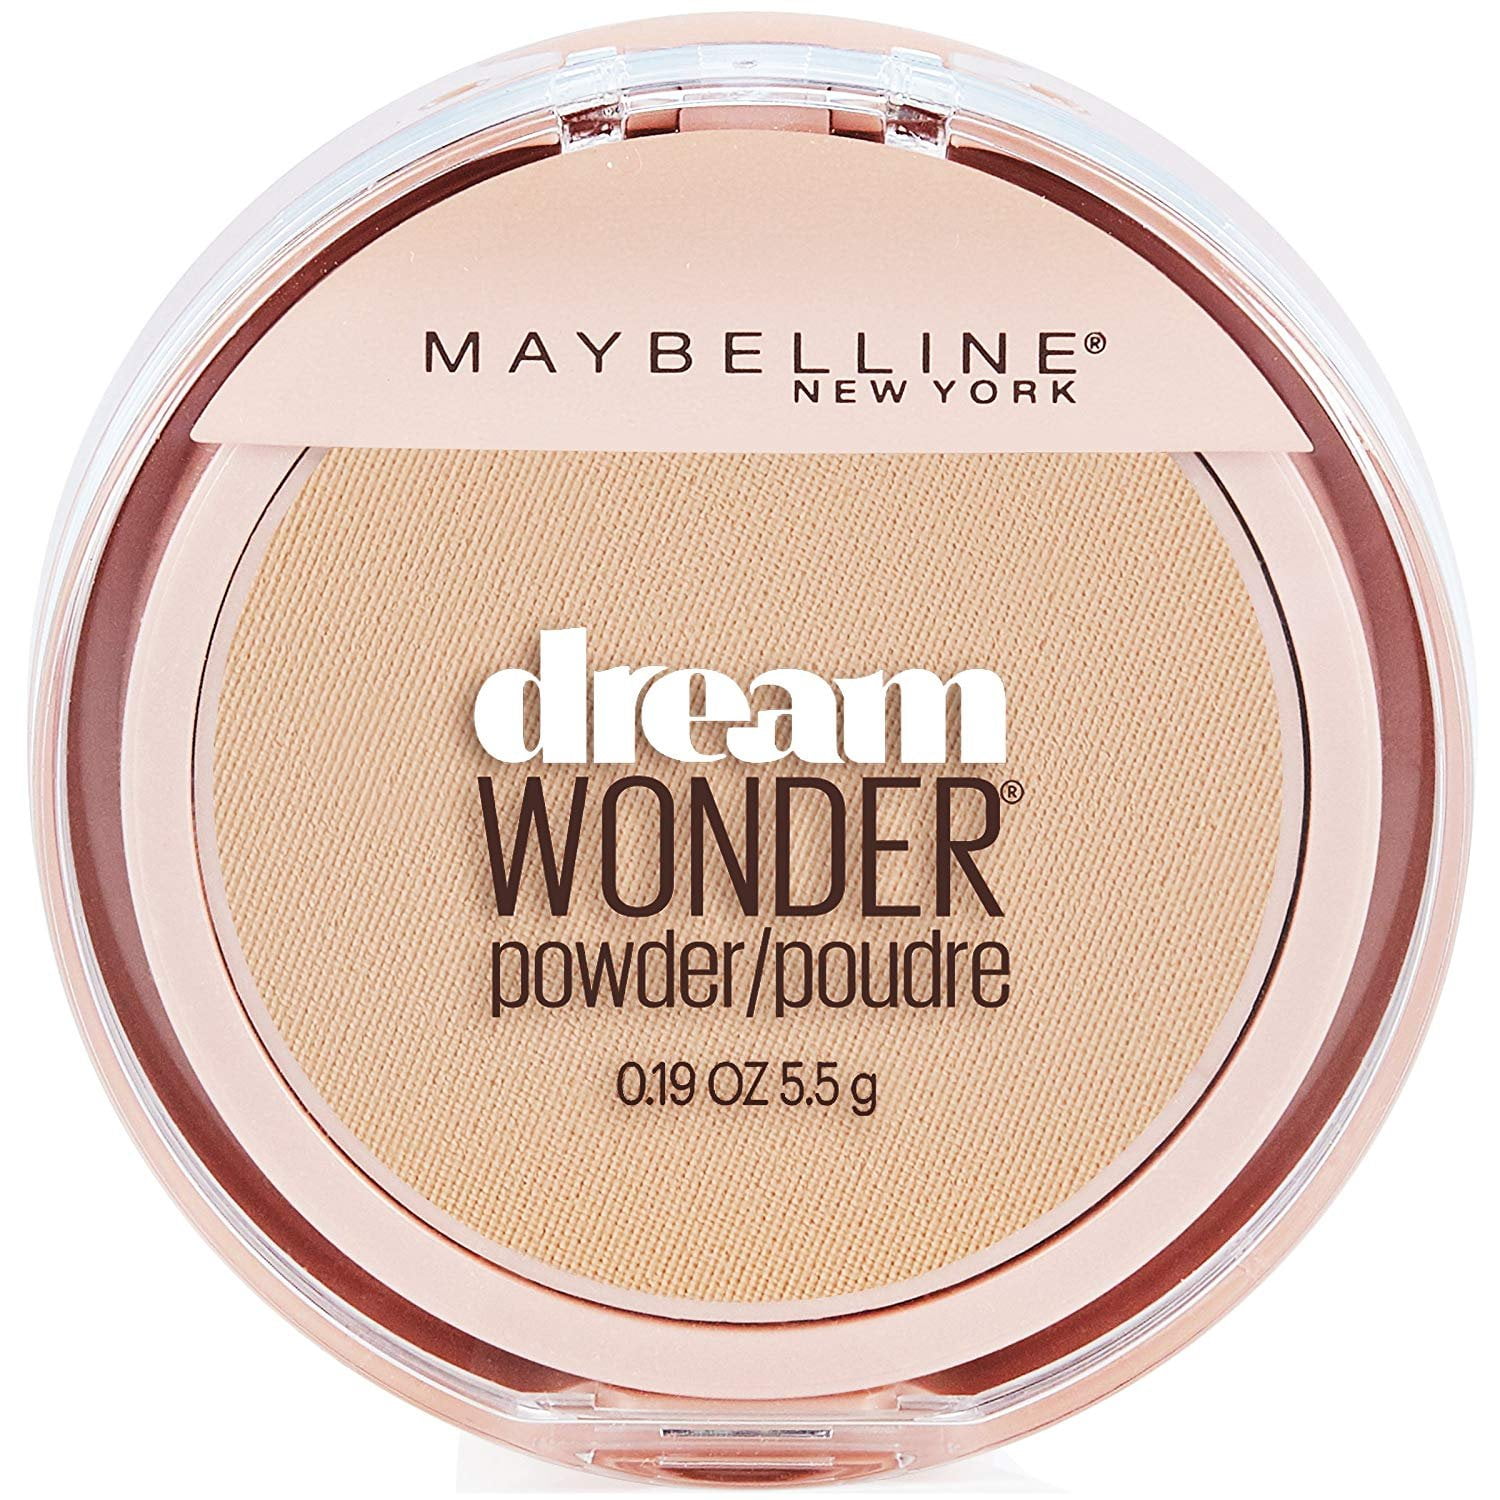 Maybelline New York Dream Wonder Powder Makeup, Golden 